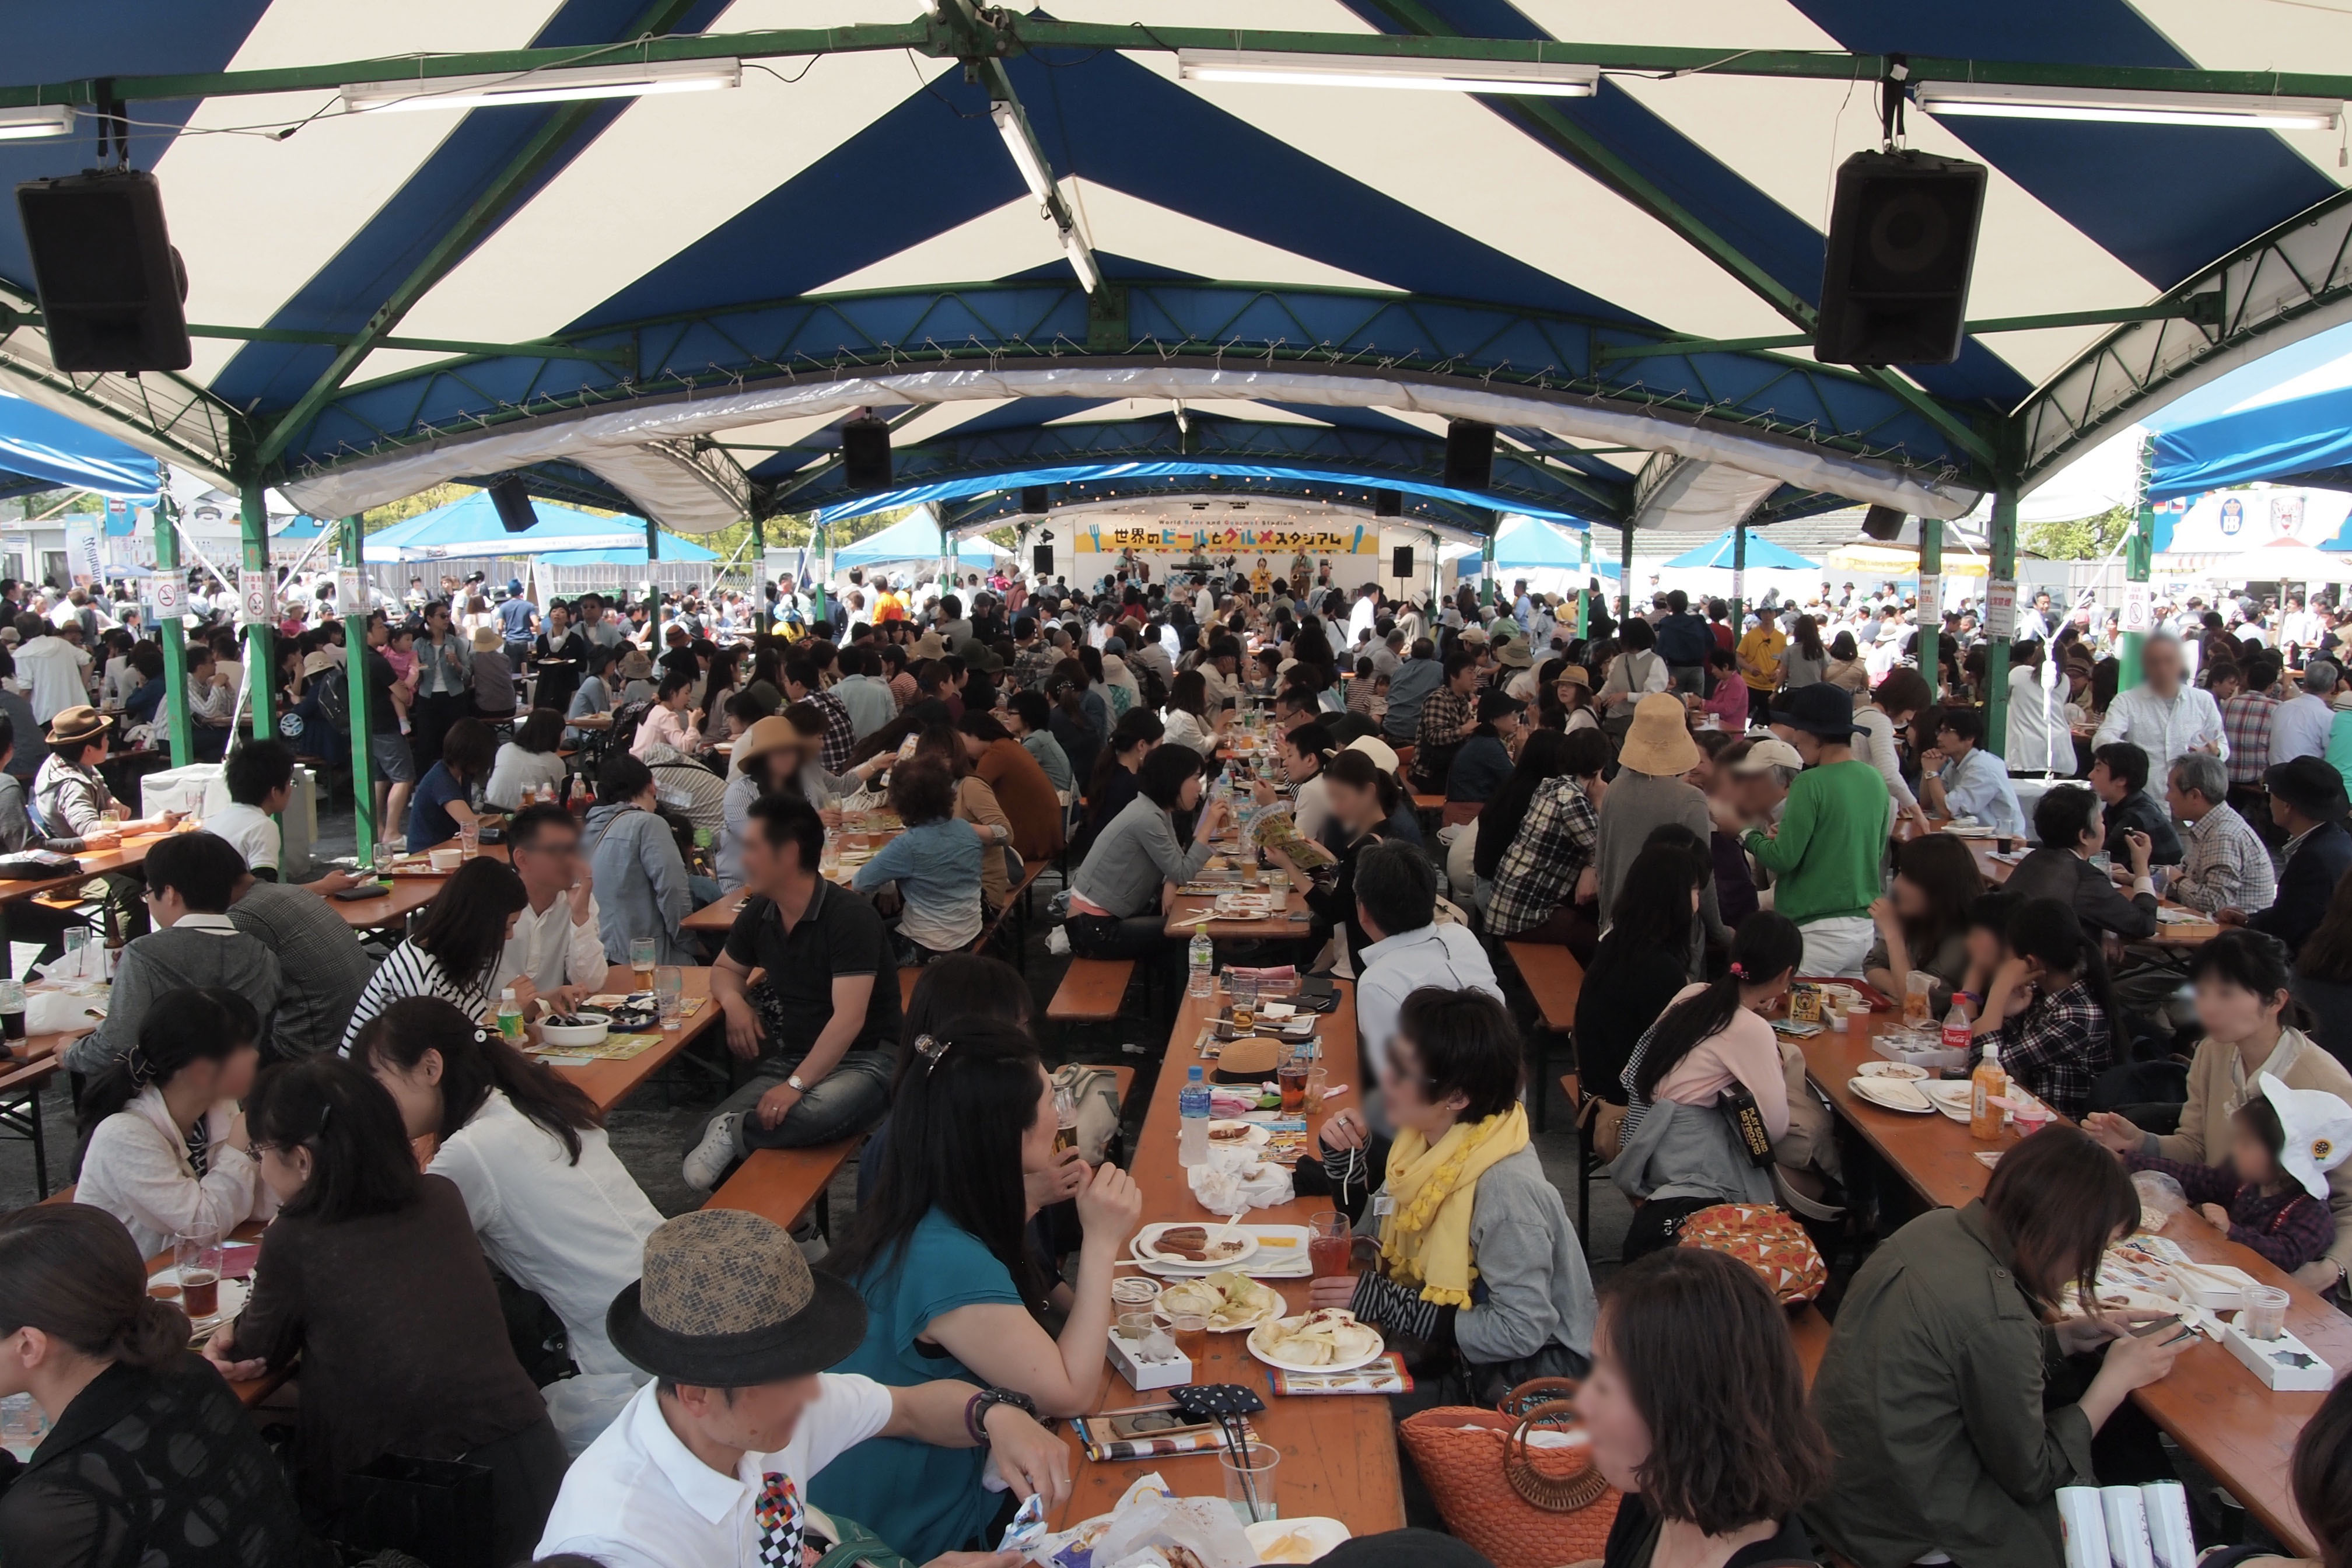 広島で世界を味わう 飲む 食べる 楽しむ10日間 世界のビールとグルメスタジアム17 4月28日から旧広島市民球場跡地で開催 広島 テレビ放送株式会社のプレスリリース